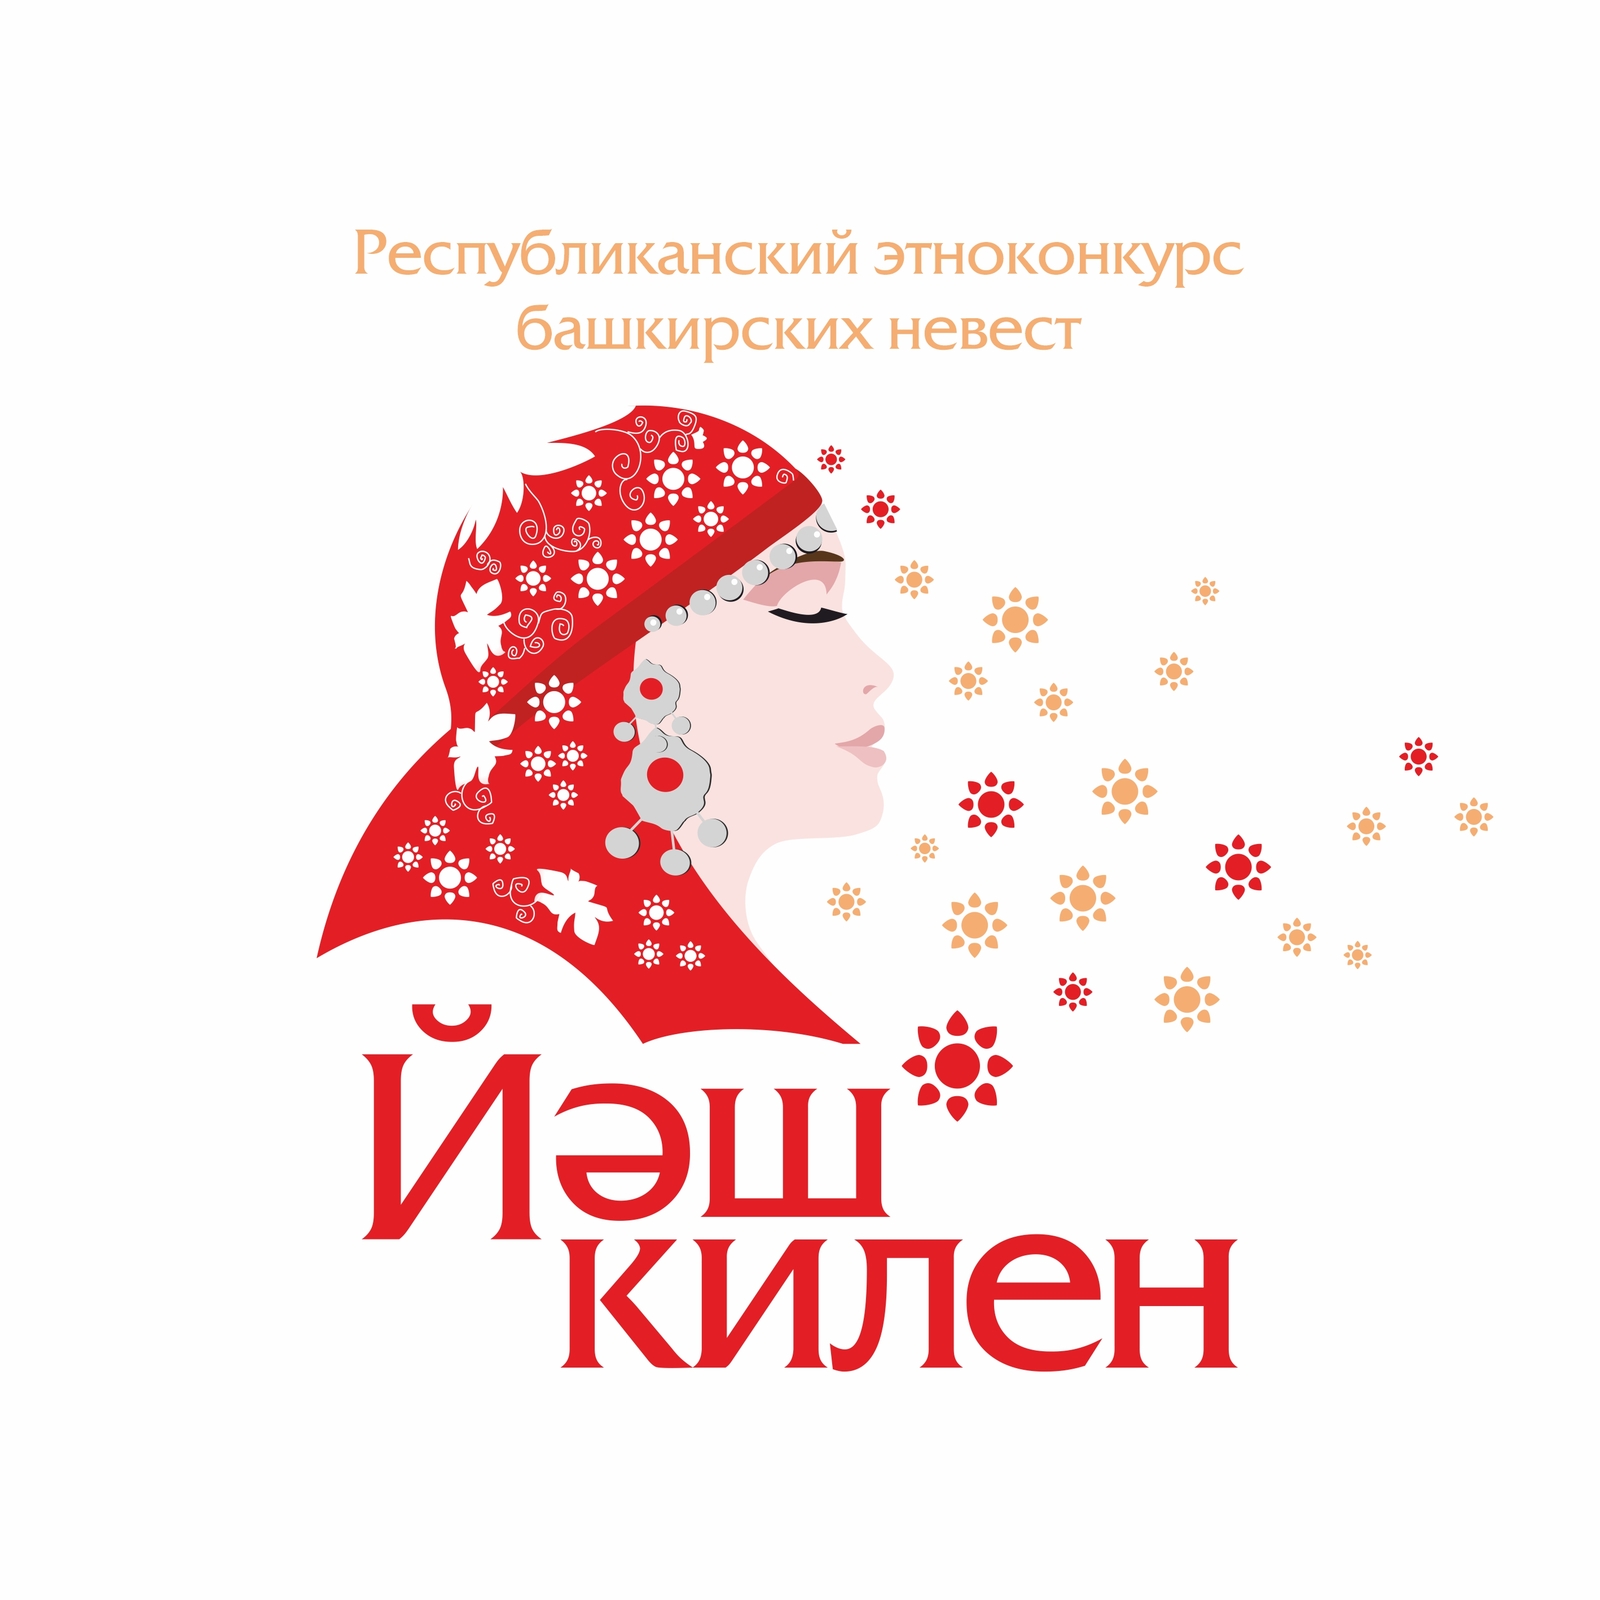 Республиканский этноконкурс башкирских невест «Йәш килен» состоится 23-24 марта